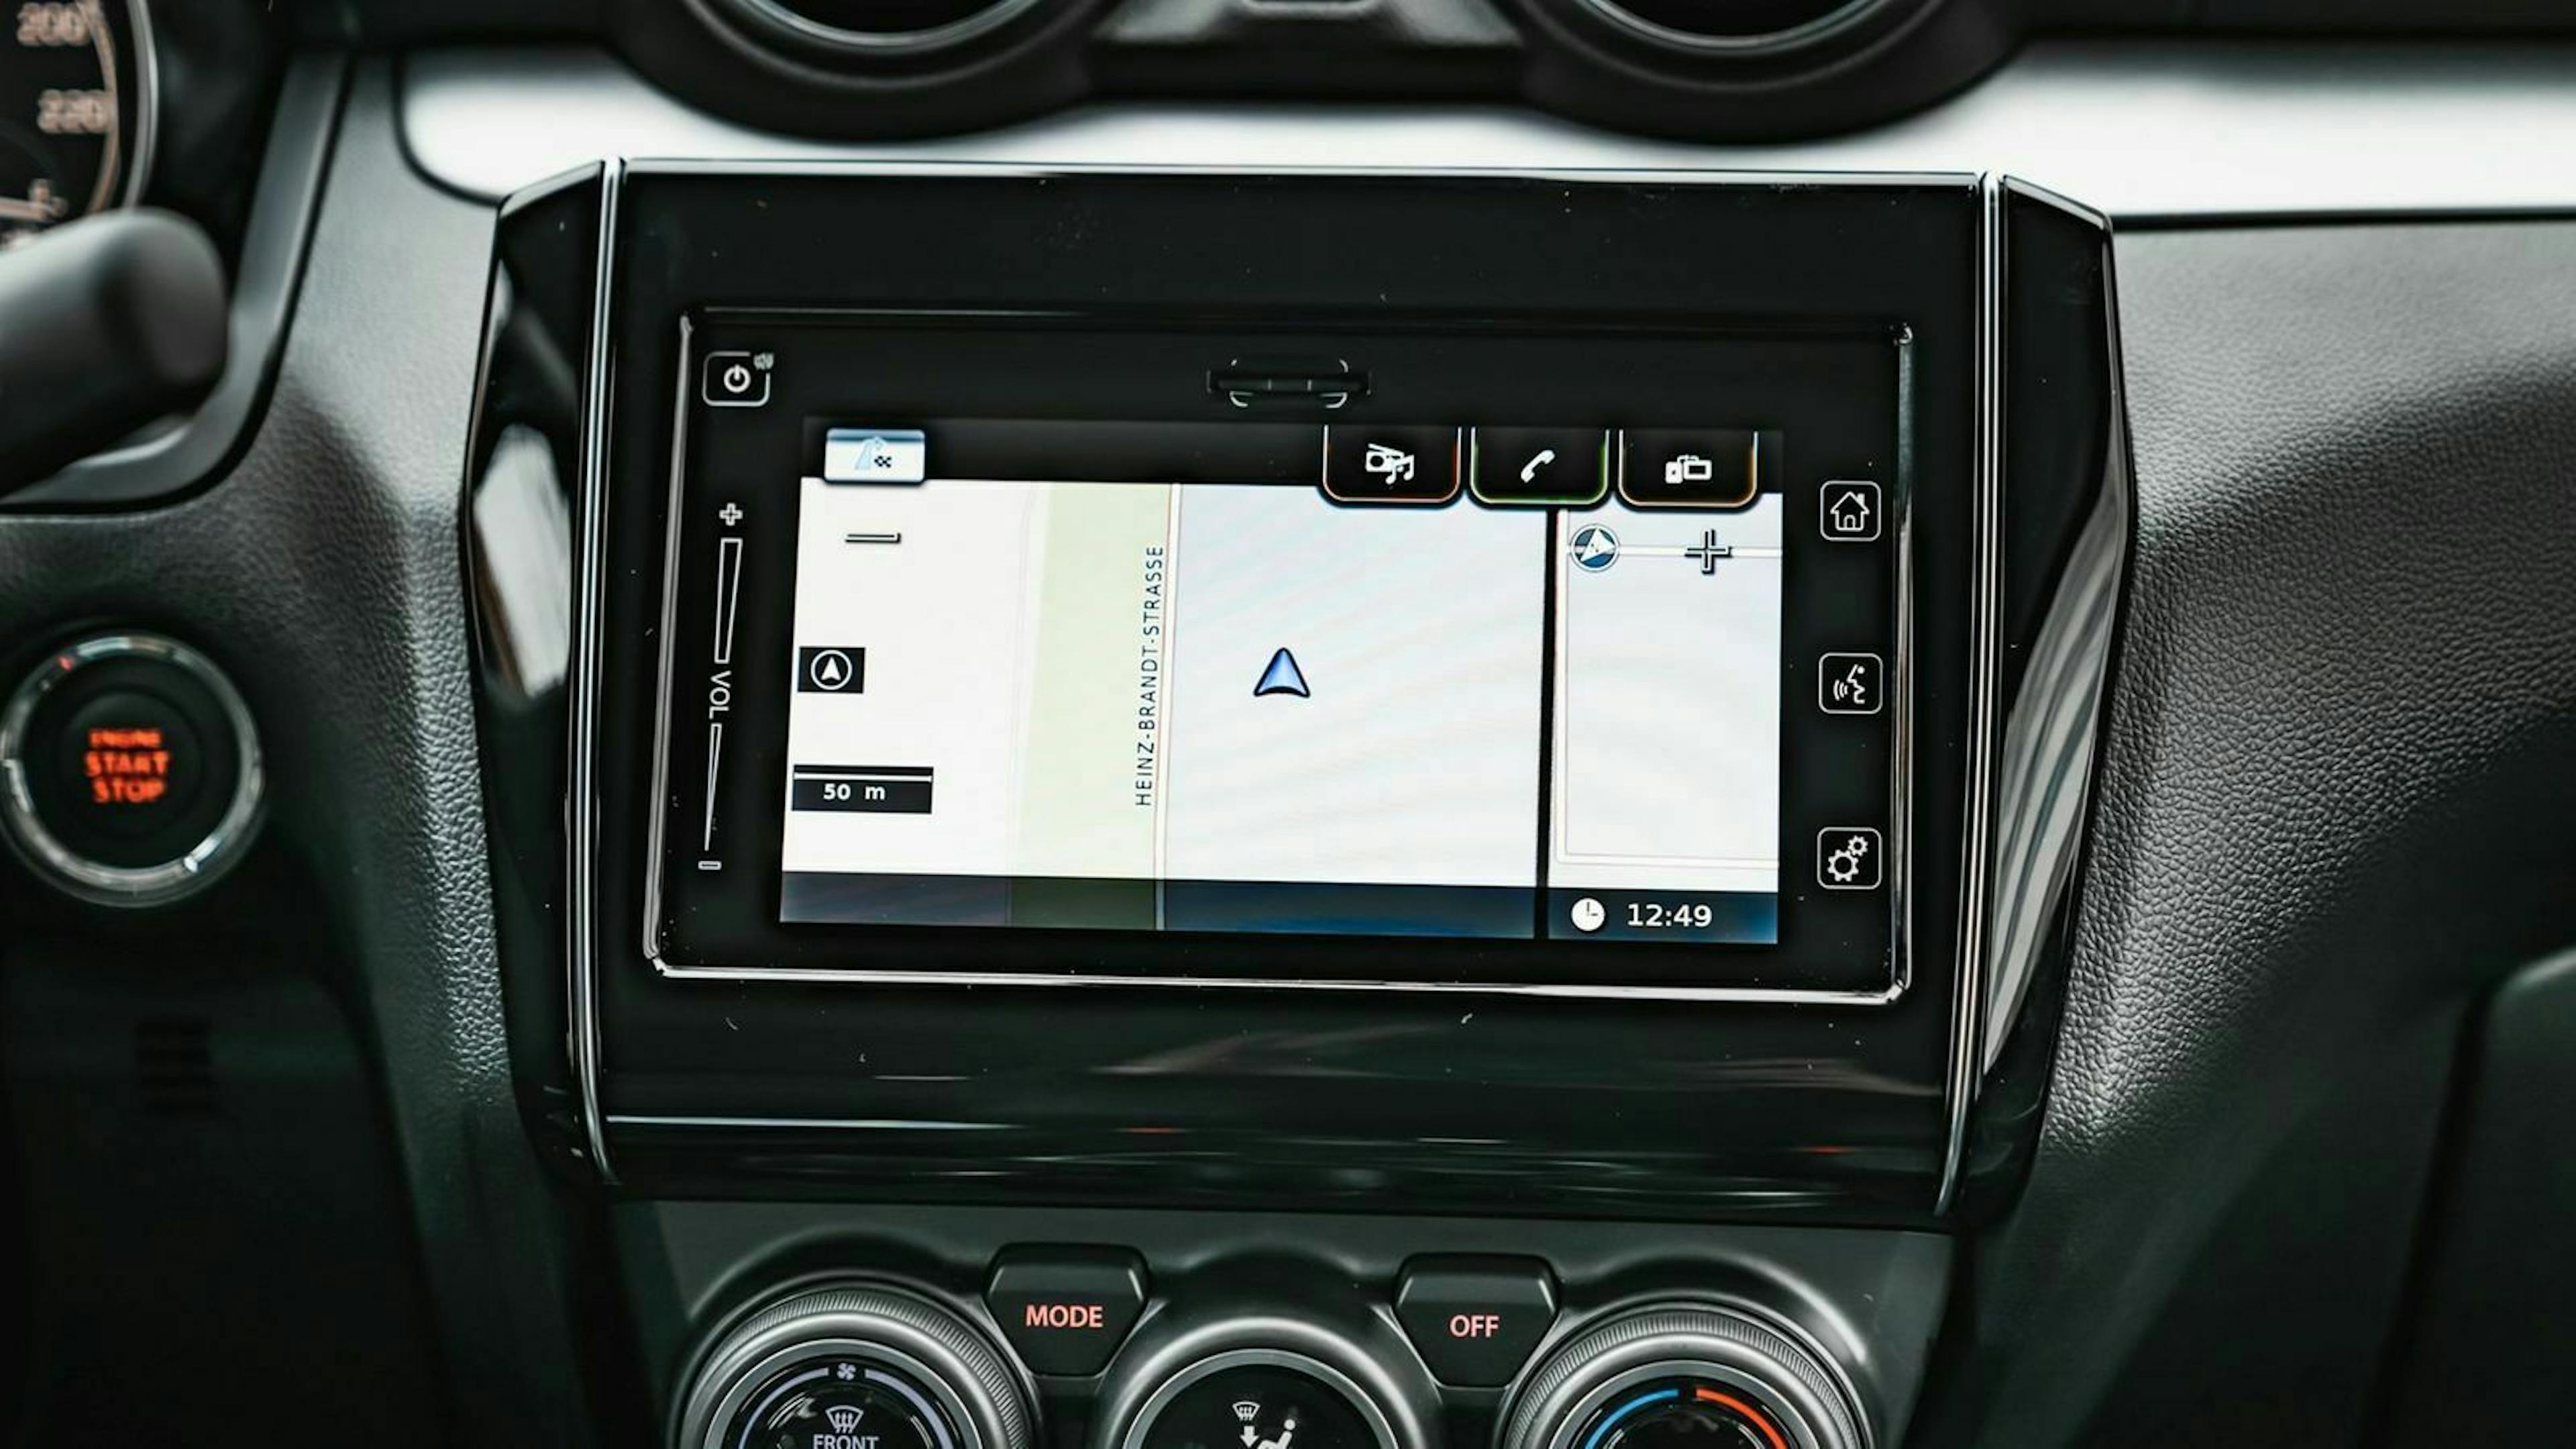 Zu sehen ist der Infotainment-Bildschirm des Suzuki Swift Hybrid 2020 